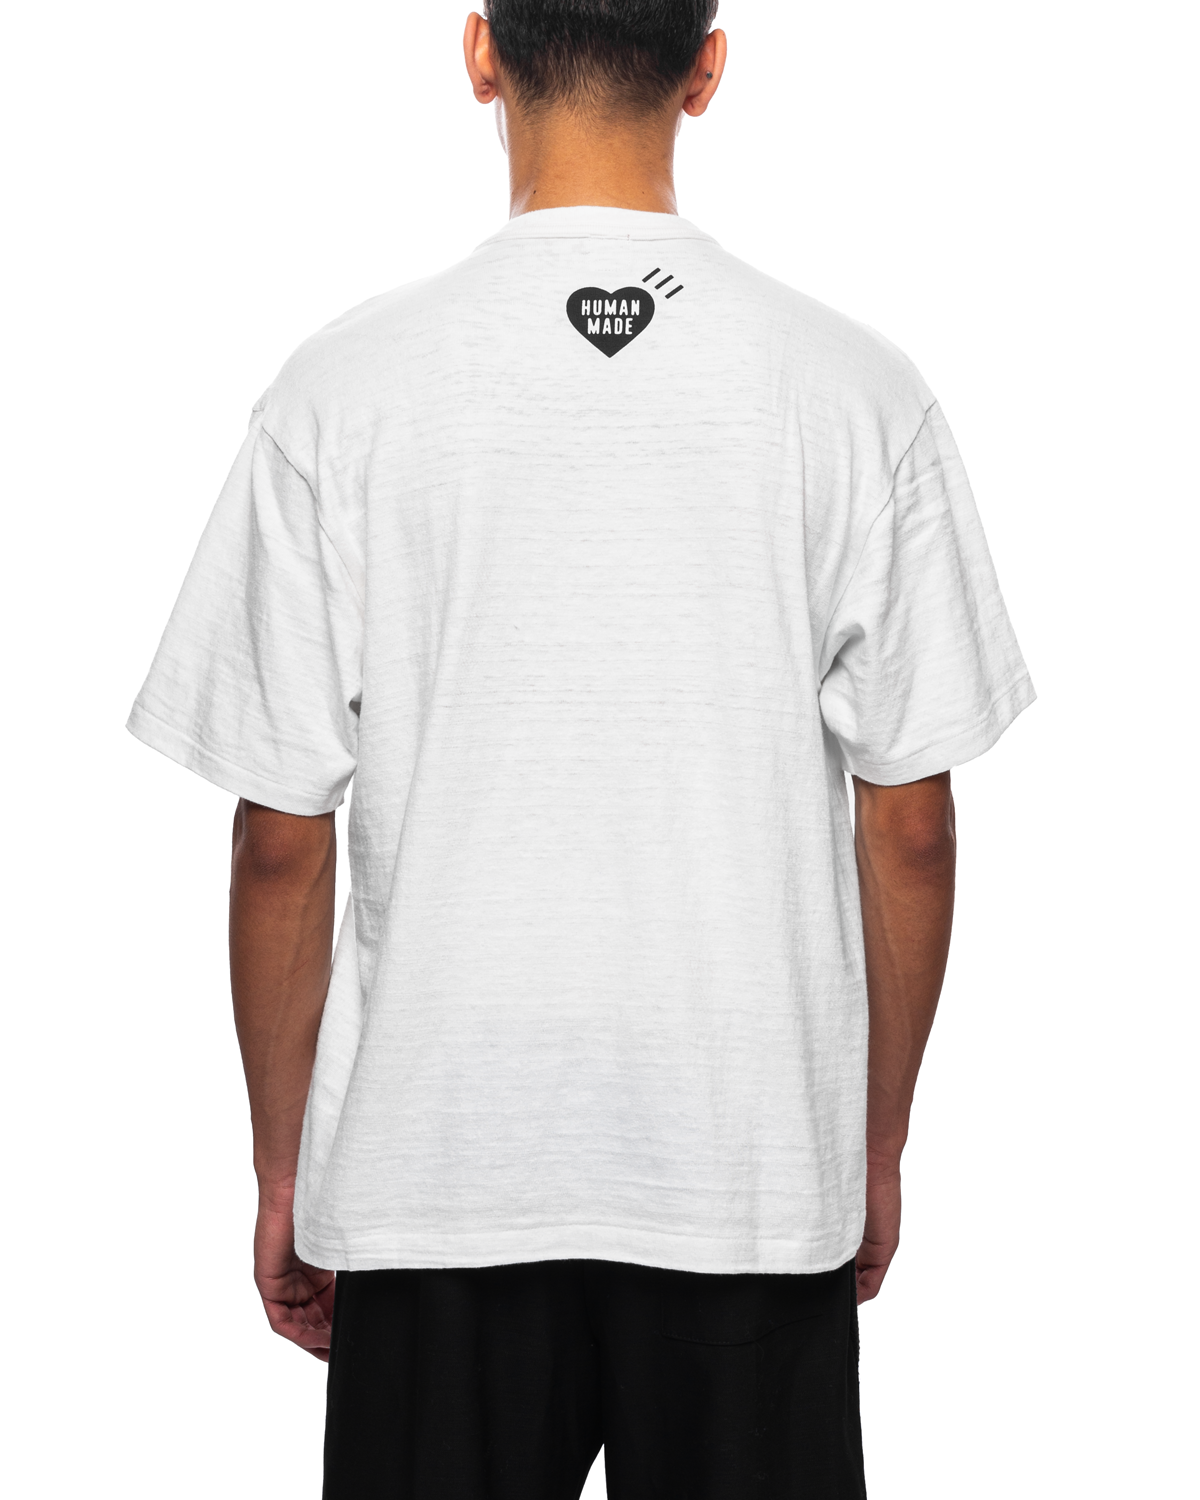 Graphic T-Shirt #7 White